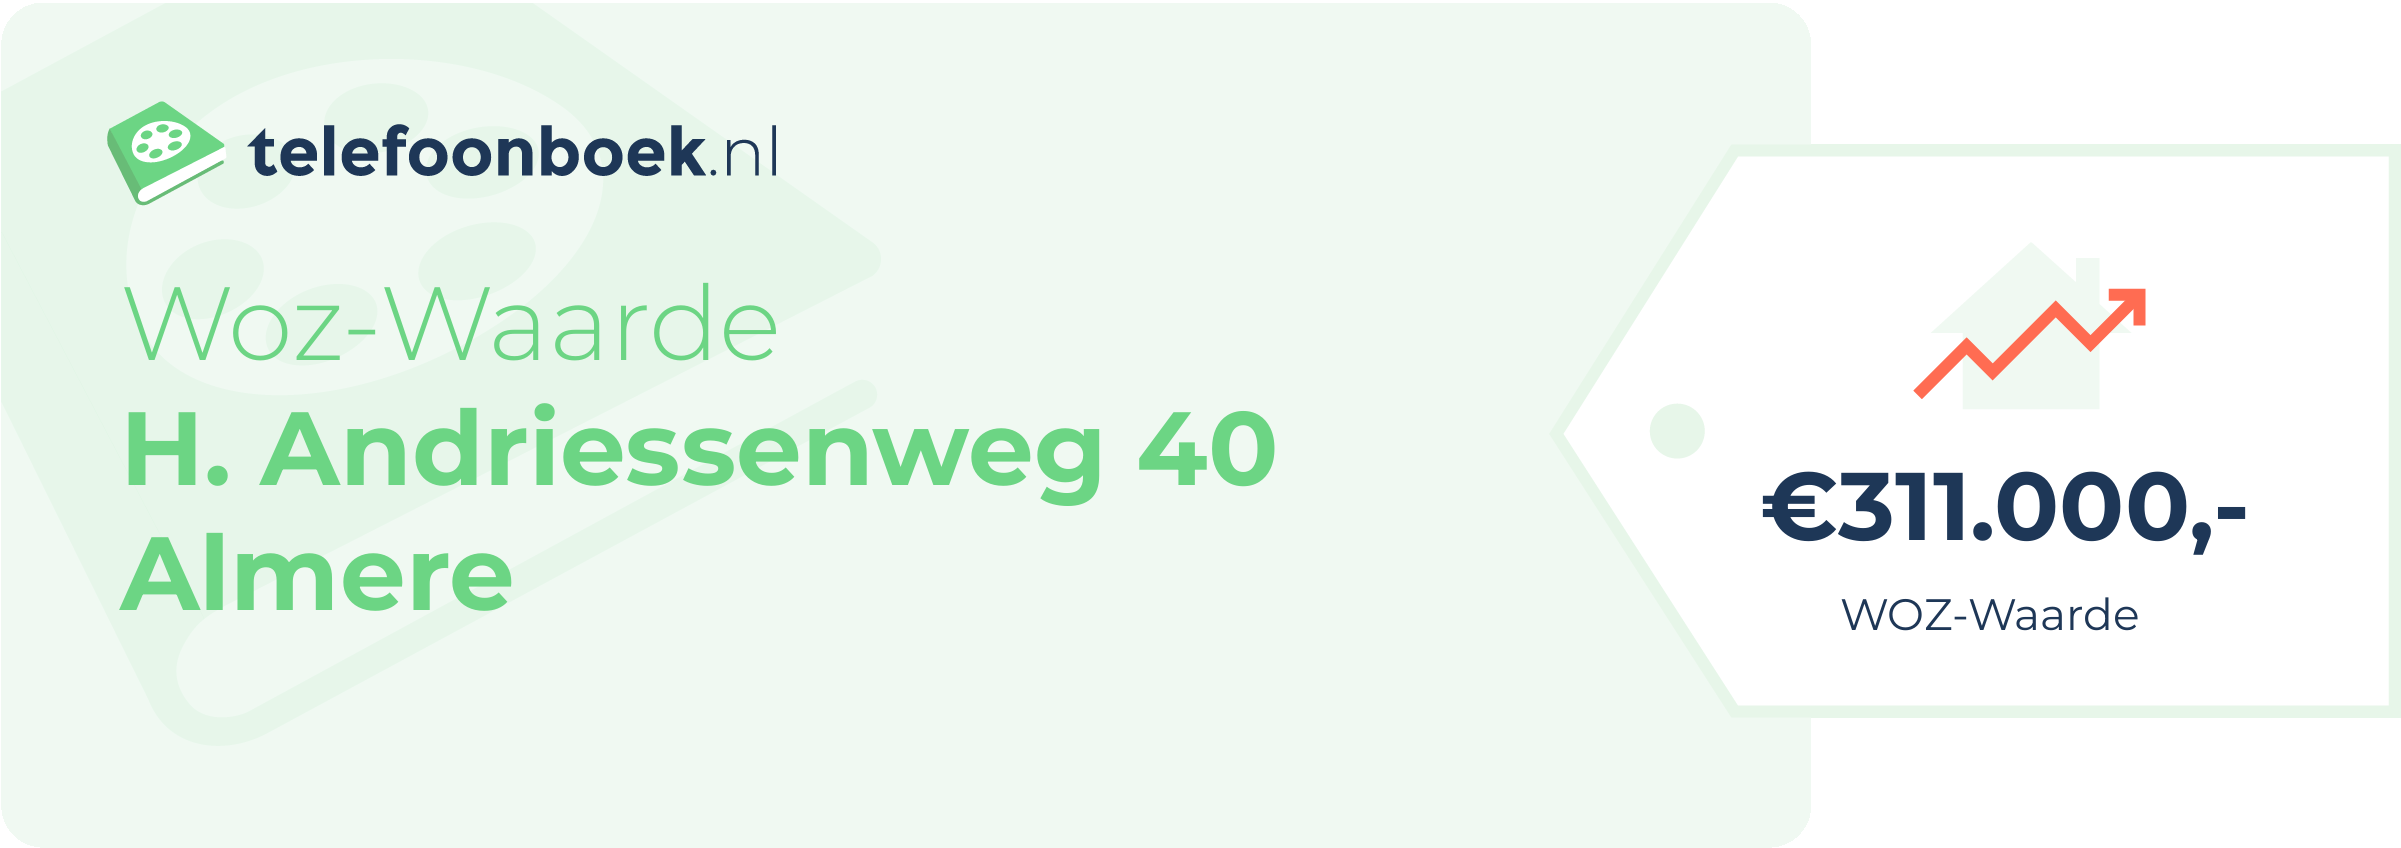 WOZ-waarde H. Andriessenweg 40 Almere